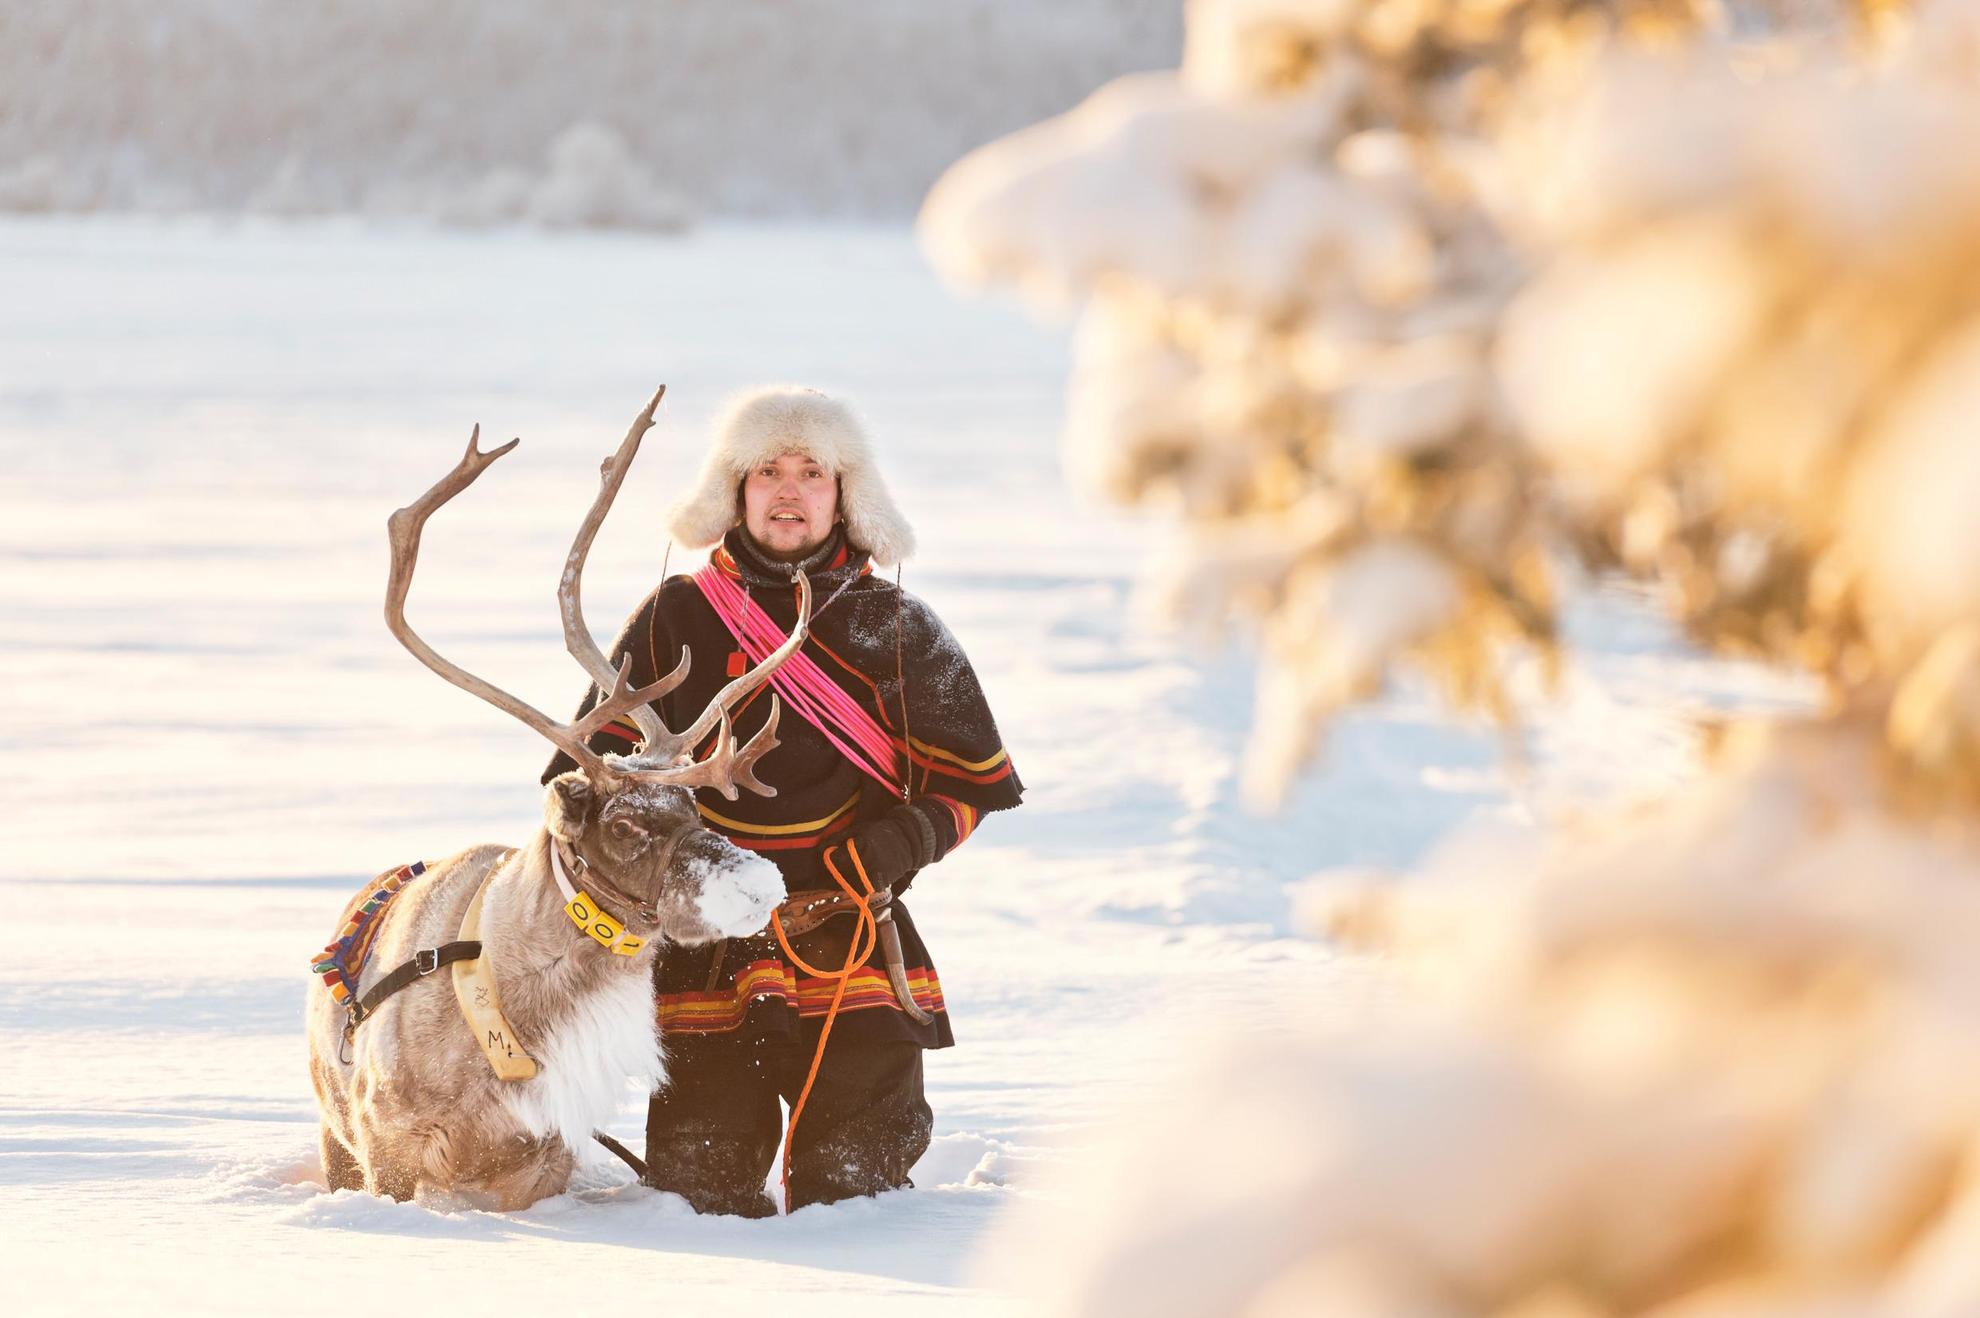 Sámi culture